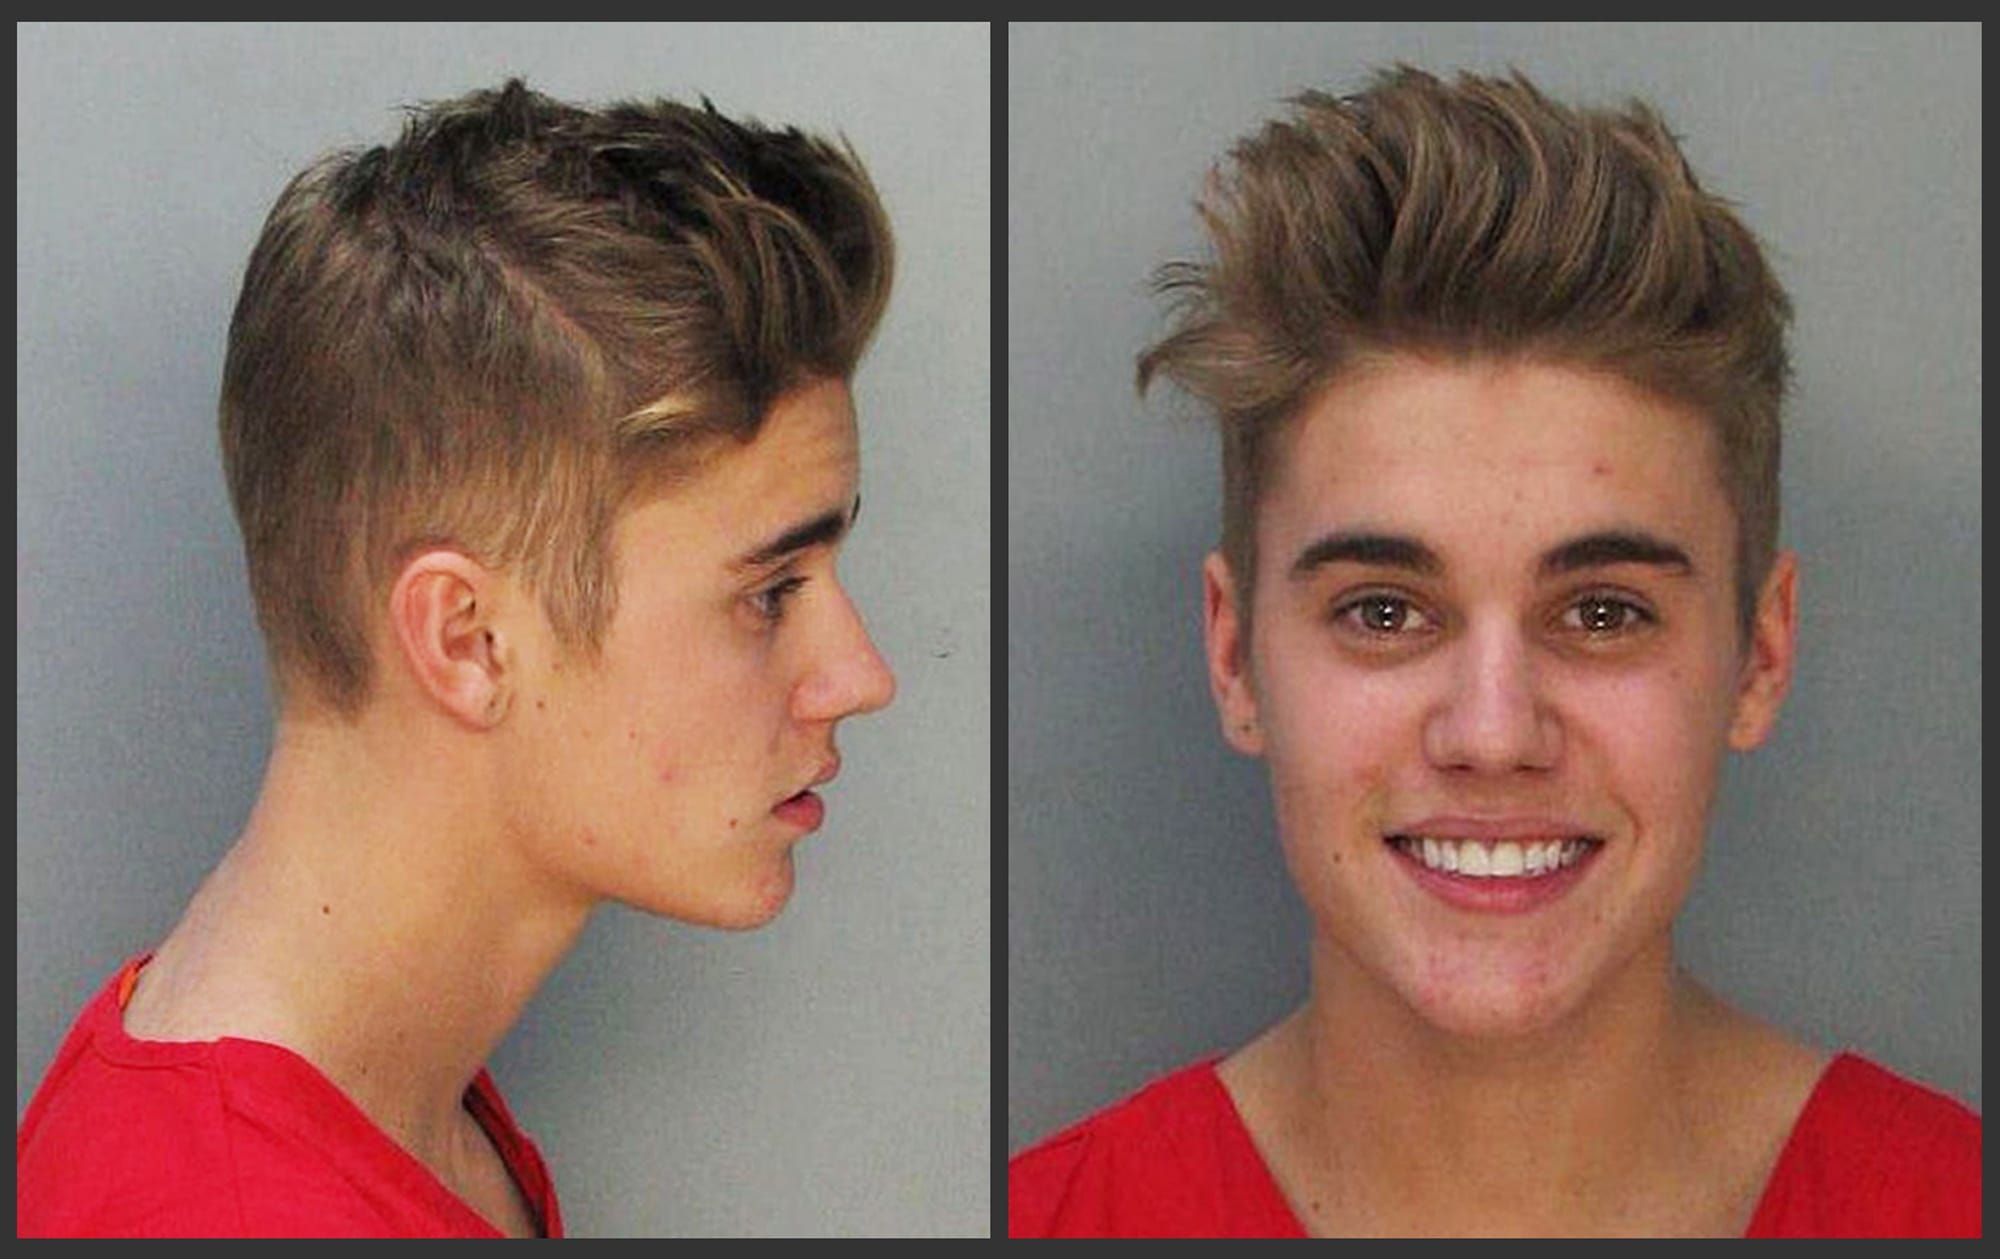 Justin Bieber
Police booking mug